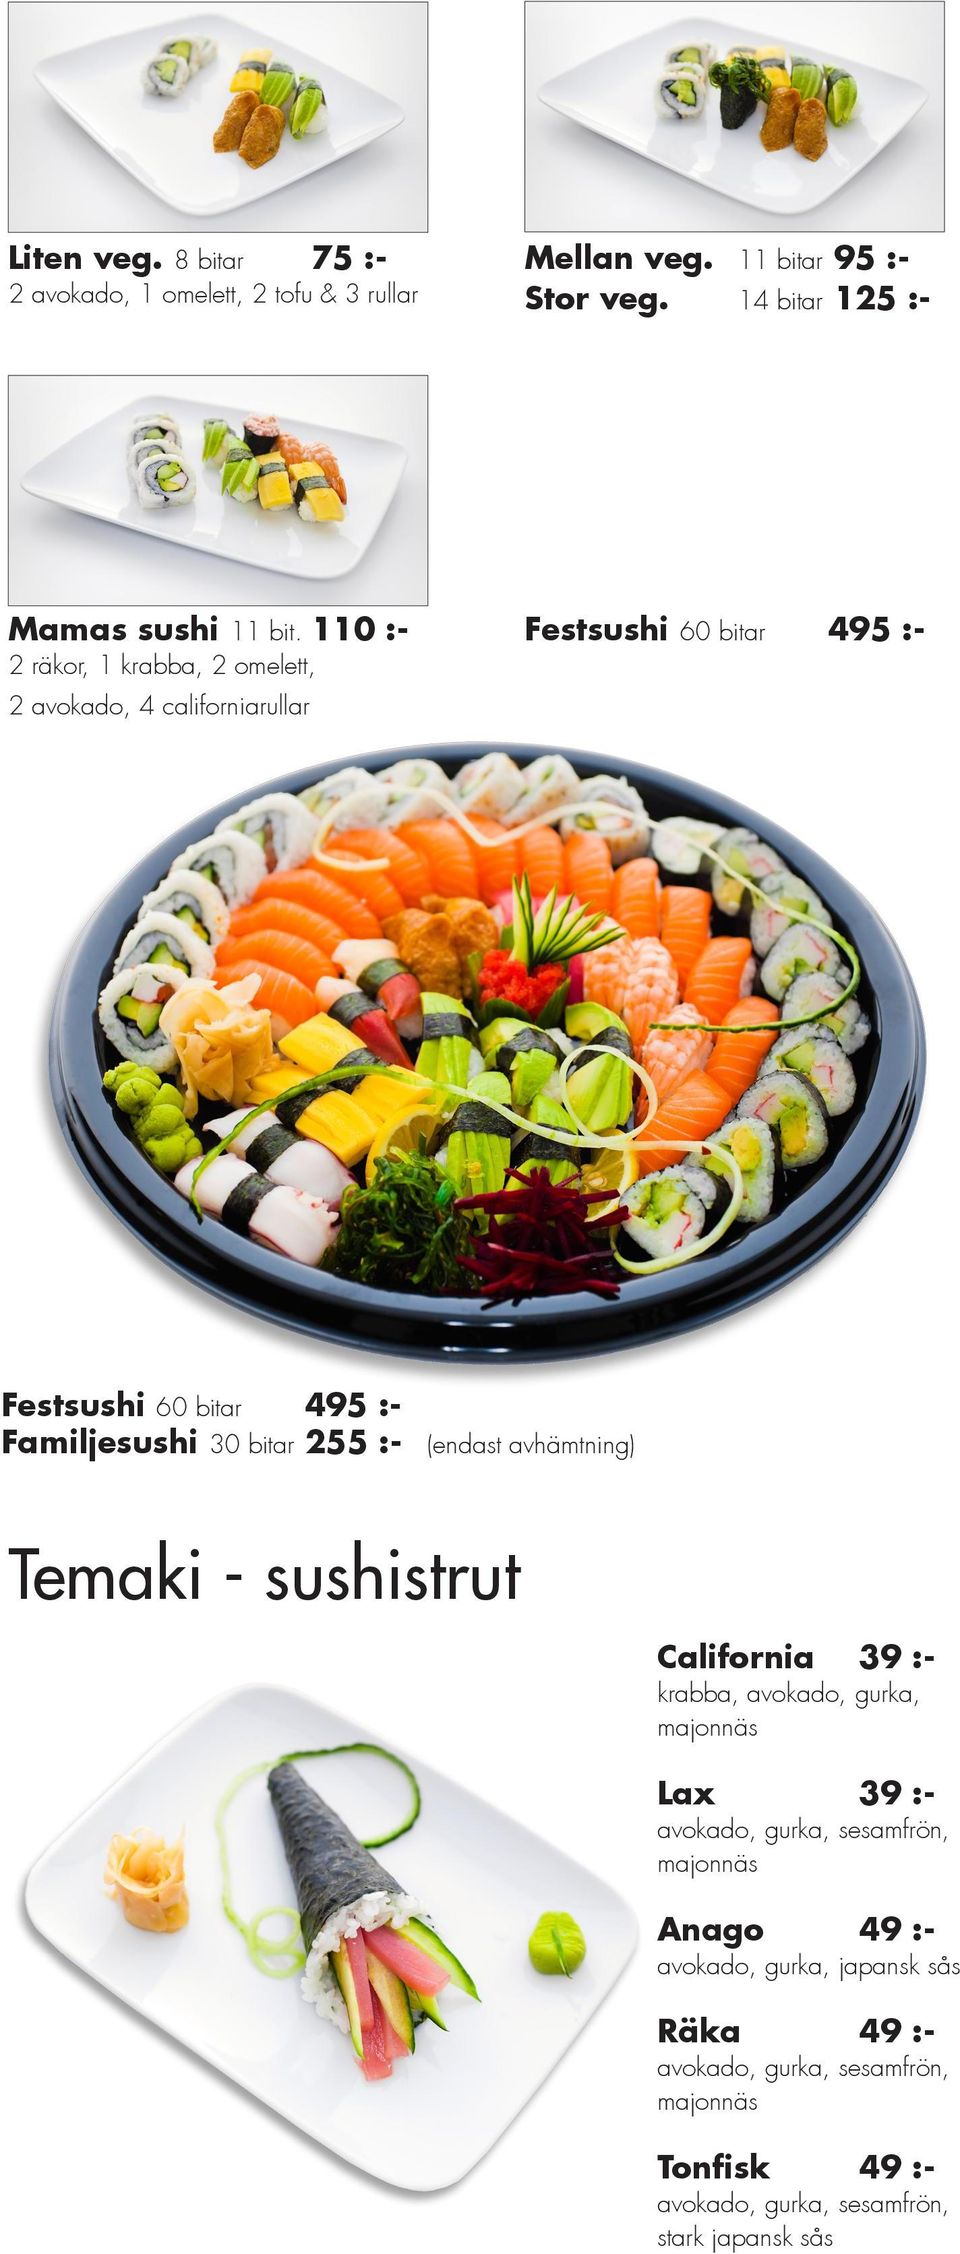 bitar 125 :Större sushi 18 bitar 155 :- abba, avokado, gurka, Alaska creamcheese, abba, avokado, gurka lax, avokado, gurka, Mellan sushi 11 bitar 95 :3 lax, 1 räka, 1 avokado, 4 rullar, 1 thai, 1